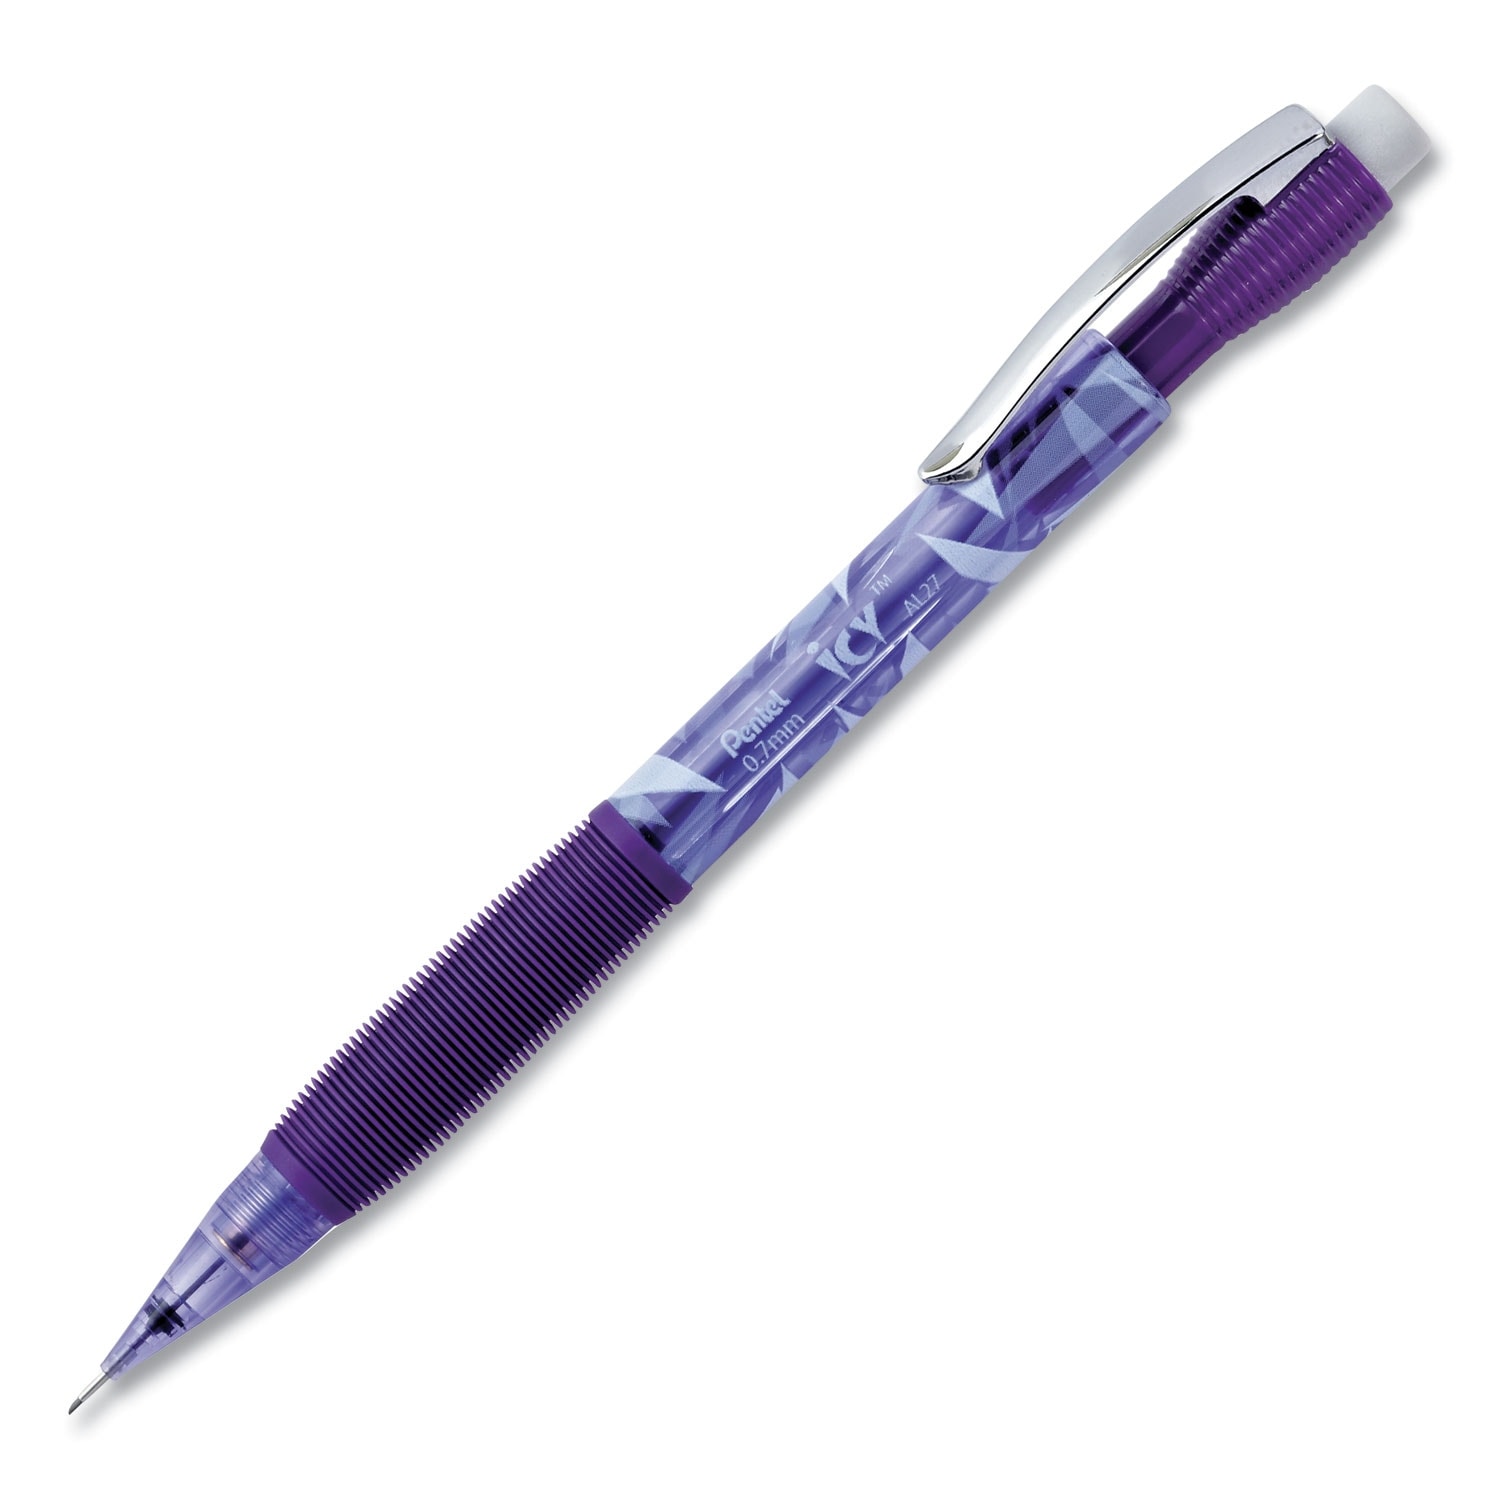 Icy Mechanical Pencil, HB (#2.5), Black Lead, Transparent Violet,